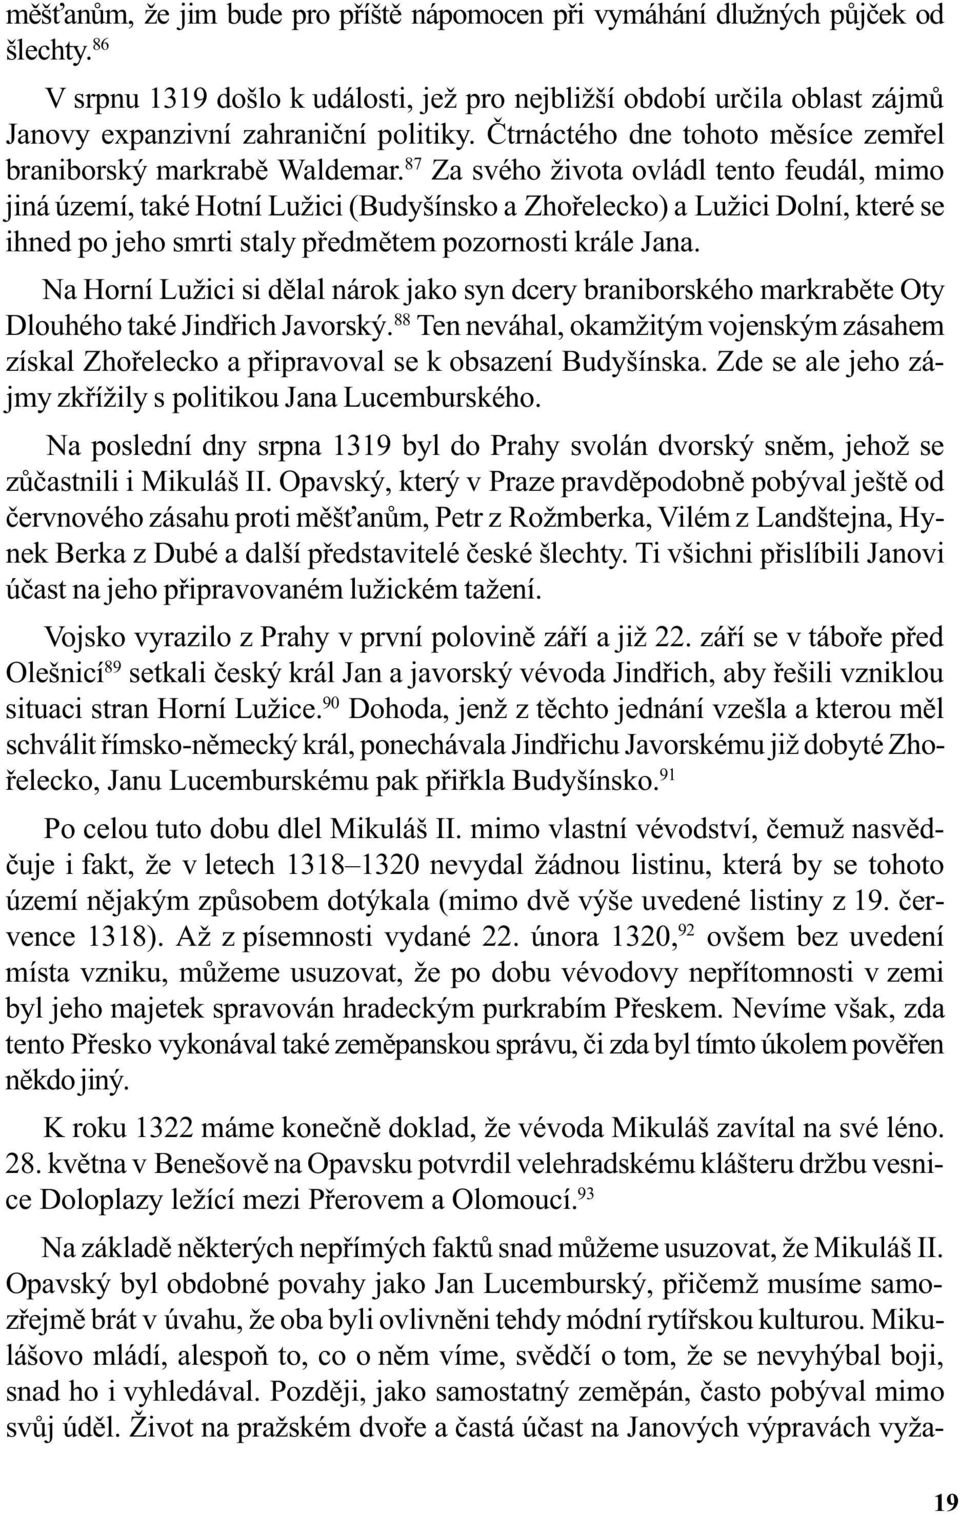 87 Za svého života ovládl tento feudál, mimo jiná území, také Hotní Lužici (Budyšínsko a Zhoøelecko) a Lužici Dolní, které se ihned po jeho smrti staly pøedmìtem pozornosti krále Jana.